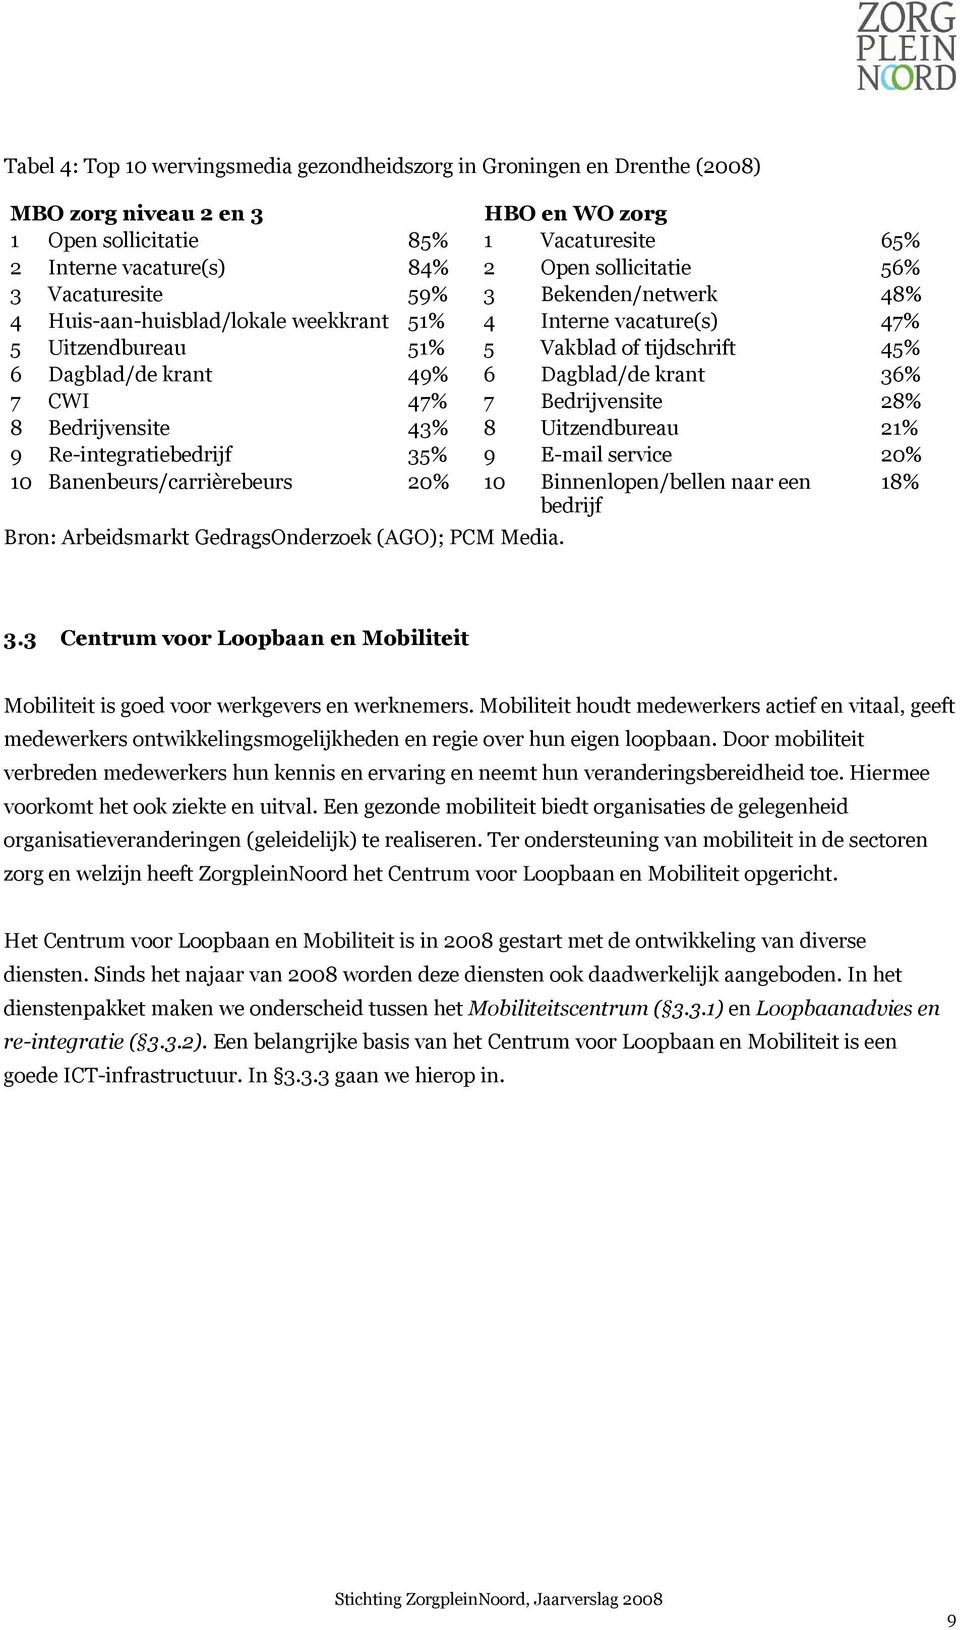 Dagblad/de krant 36% 7 CWI 47% 7 Bedrijvensite 28% 8 Bedrijvensite 43% 8 Uitzendbureau 21% 9 Re-integratiebedrijf 35% 9 E-mail service 20% 10 Banenbeurs/carrièrebeurs 20% 10 Binnenlopen/bellen naar